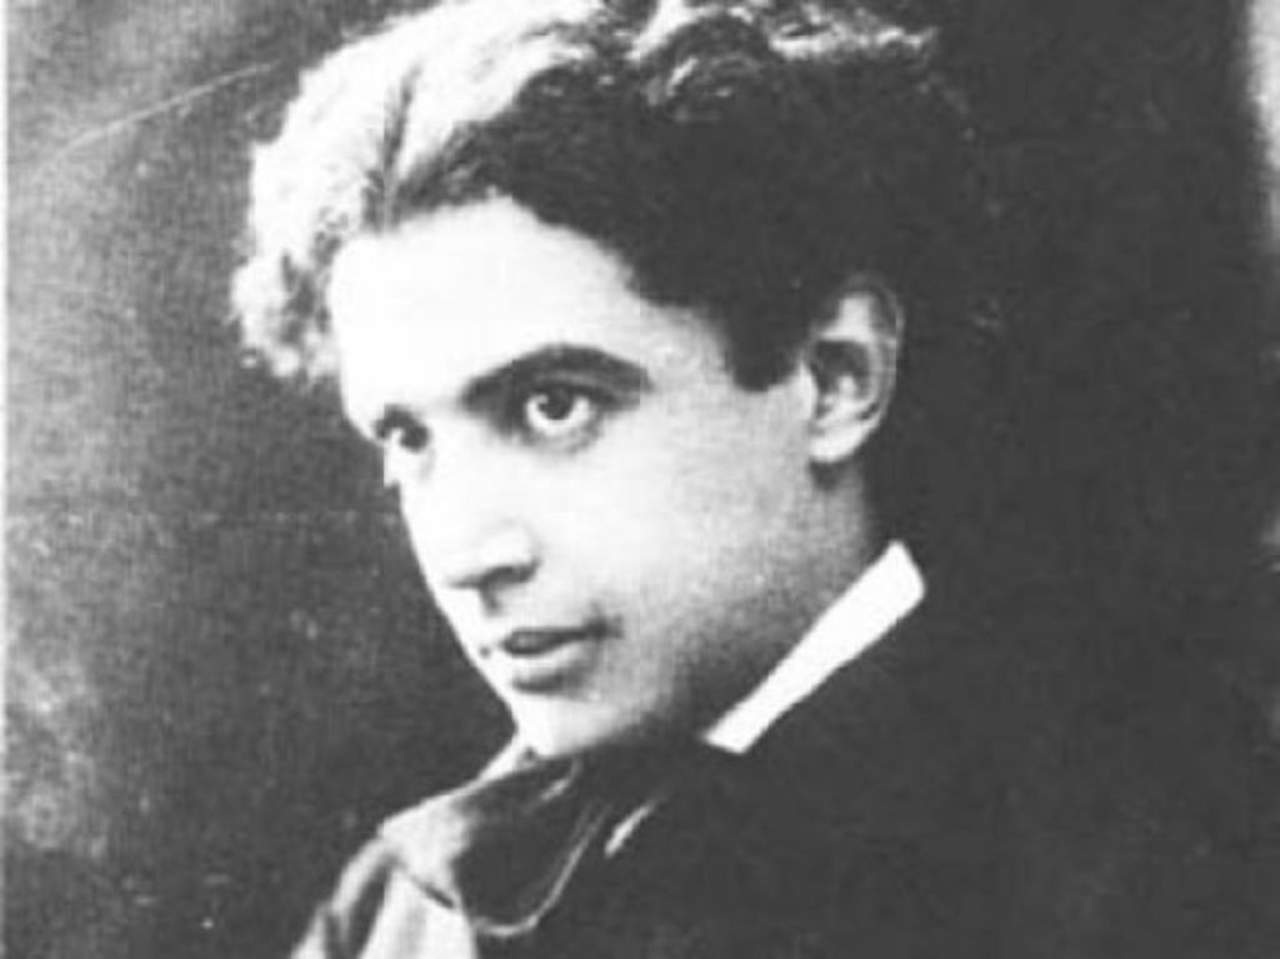 1882: Nace Manuel M. Ponce, autor de Las mañanitas y Cielito Lindo